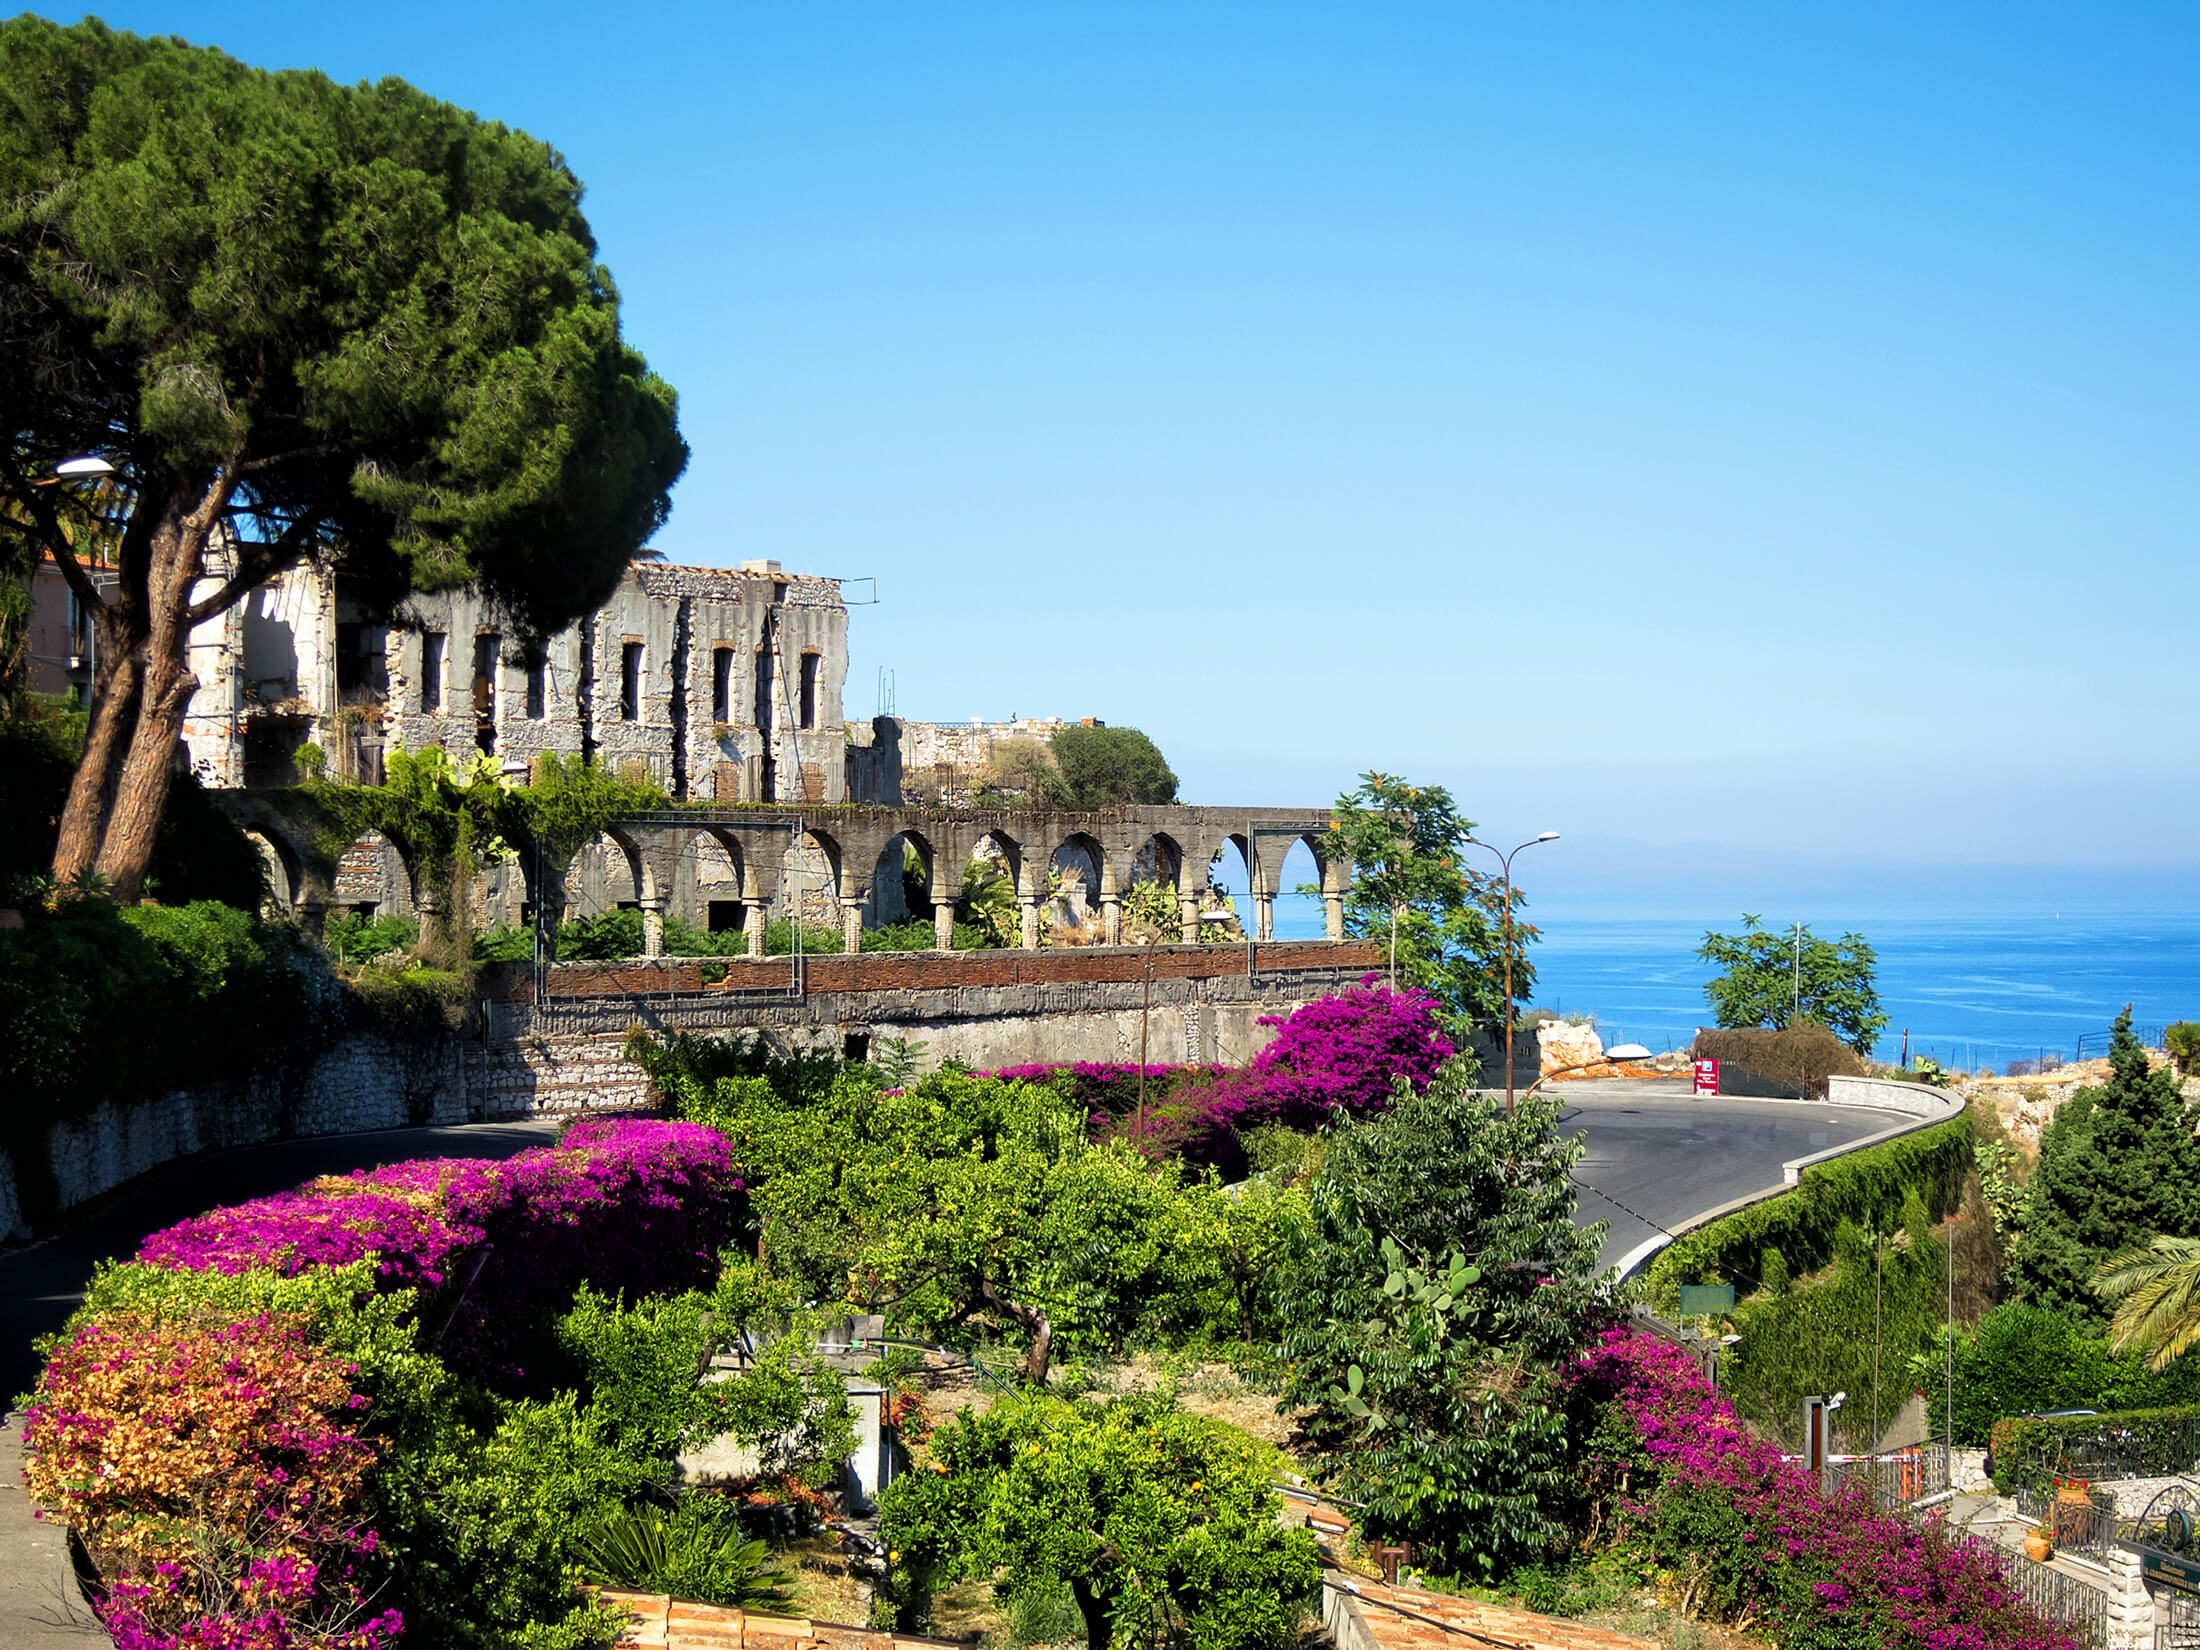 En farverig have i nærheden af en gammel bygning på Sicilien, Italien